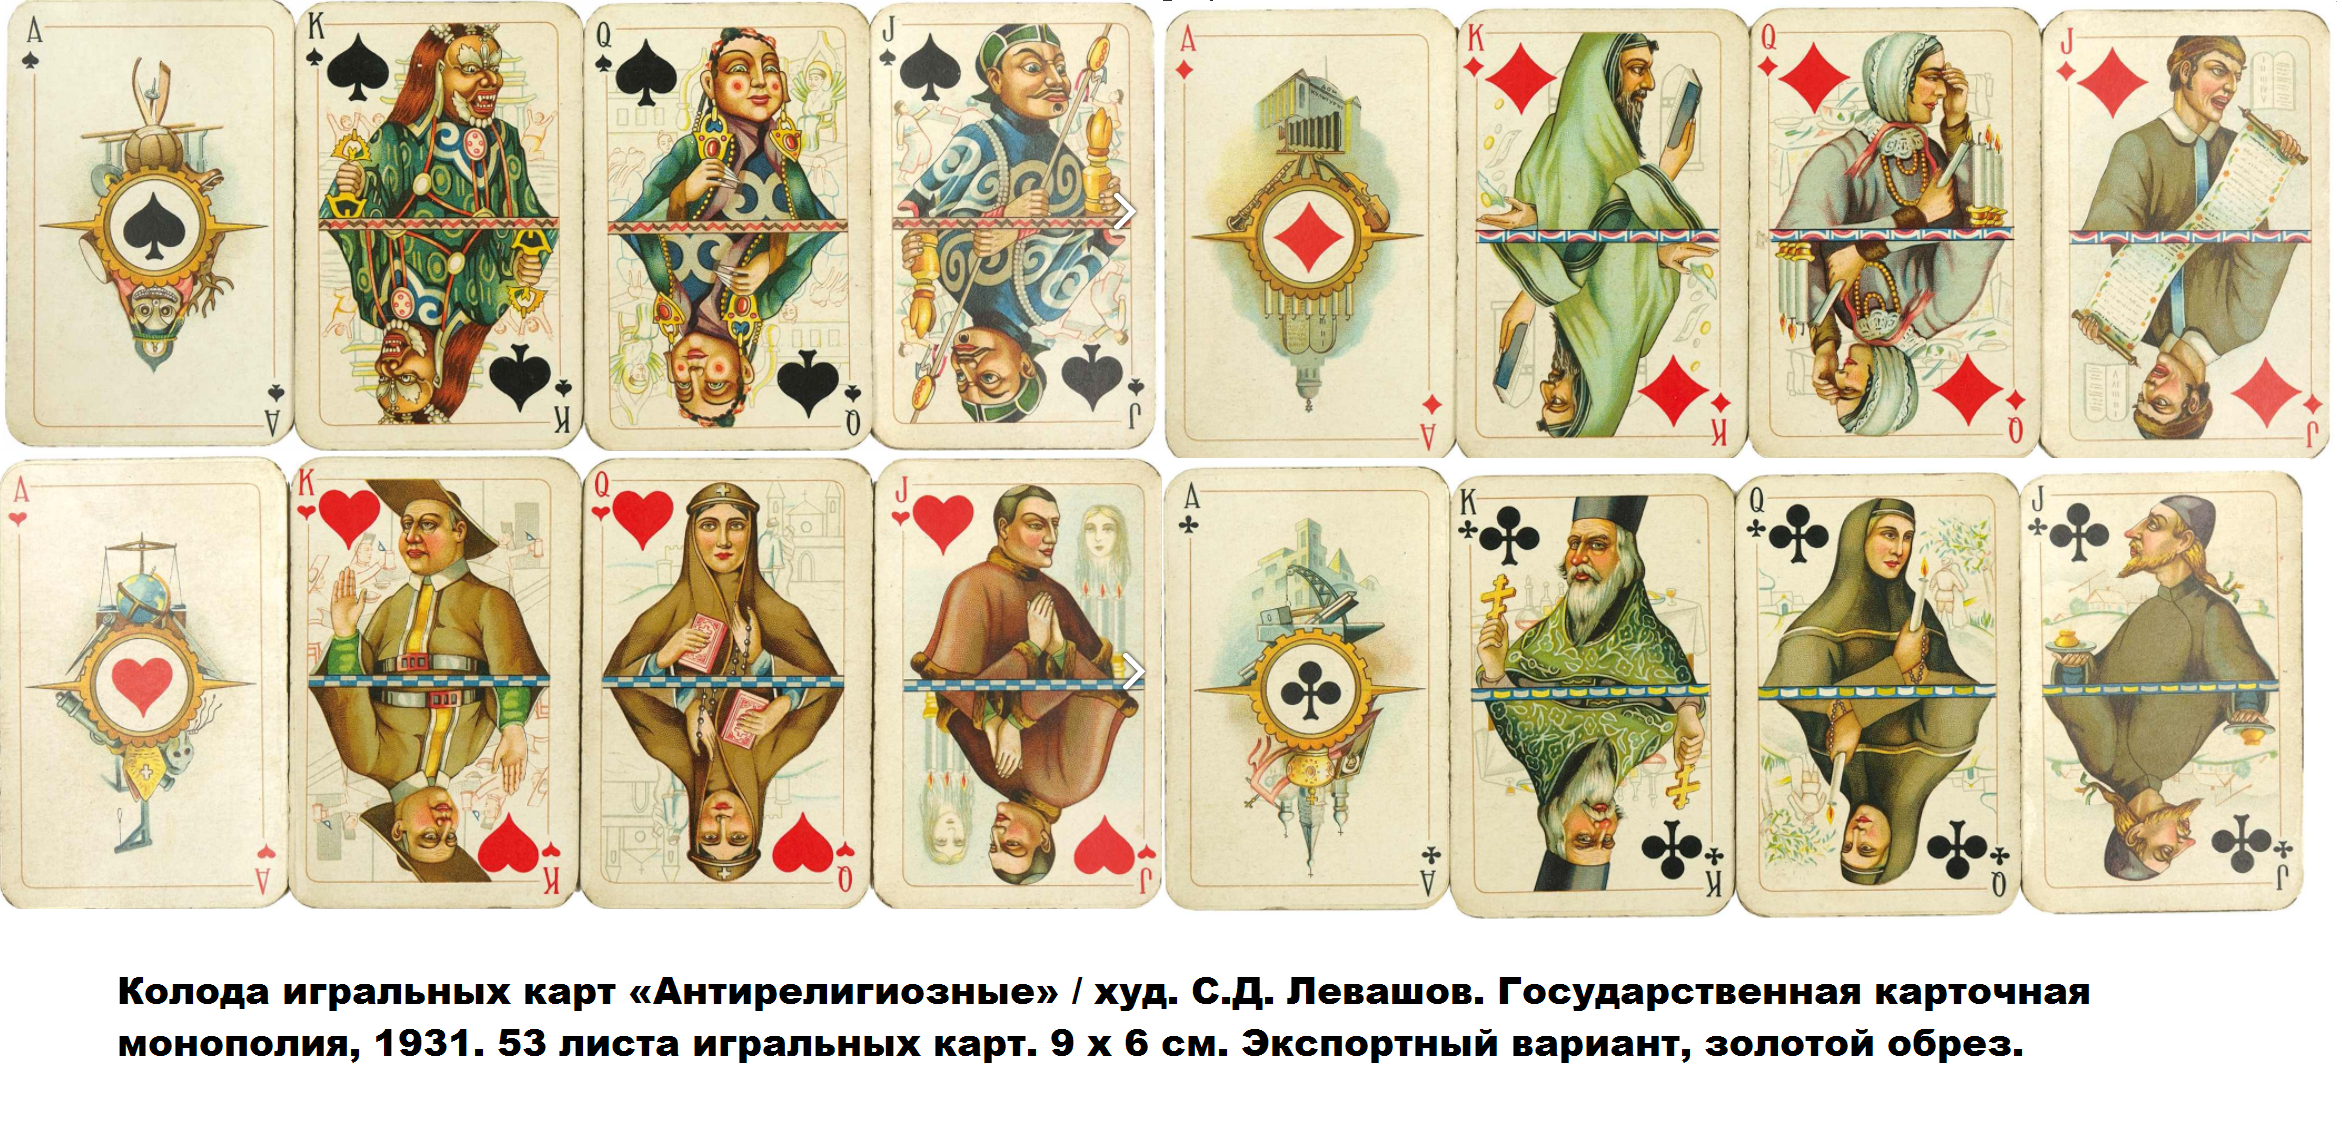 Карты с сюжетом на 2. Антифашистские игральные карты 1943. Колода игральных карт. Советские игральные карты. Карты игровые.